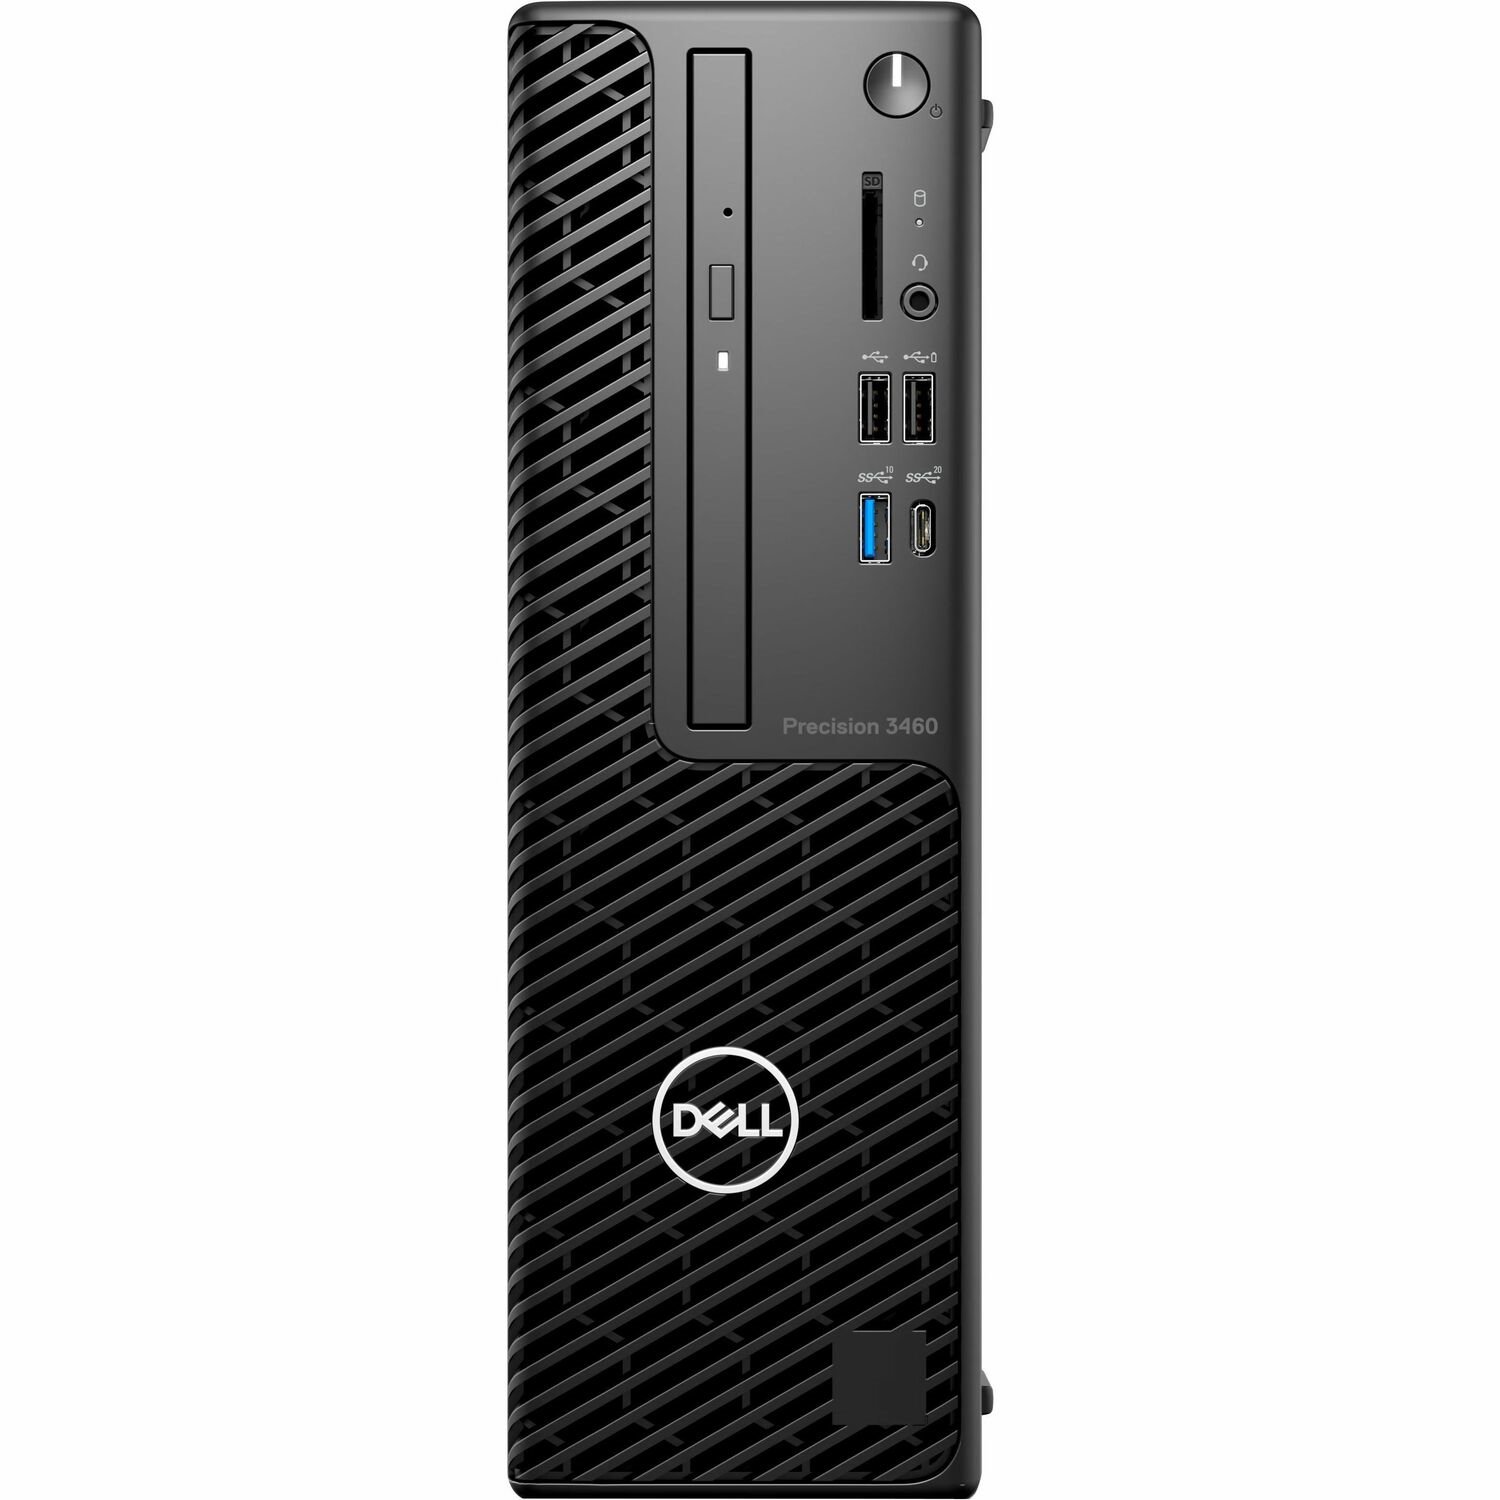 Dell Precision 3000 3460 Workstation - Intel Core i7 14th Gen i7-14700 - 32 GB - 1 TB SSD - Small Form Factor